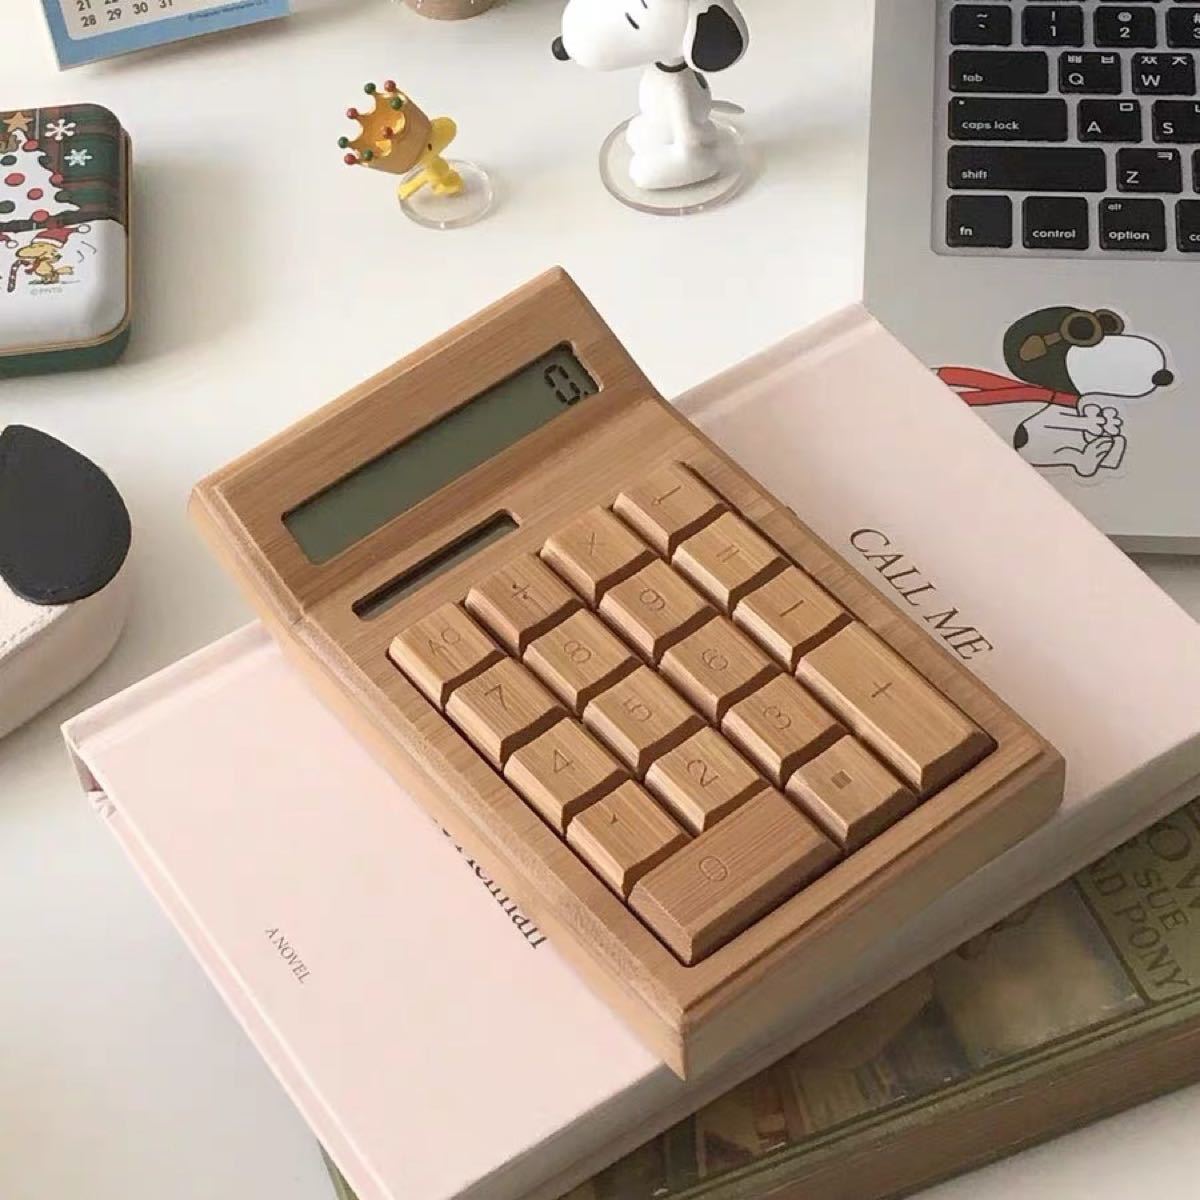 【新品未使用】竹製 バンブー 電卓 12桁 おしゃれ計算機 カフェ風 人気